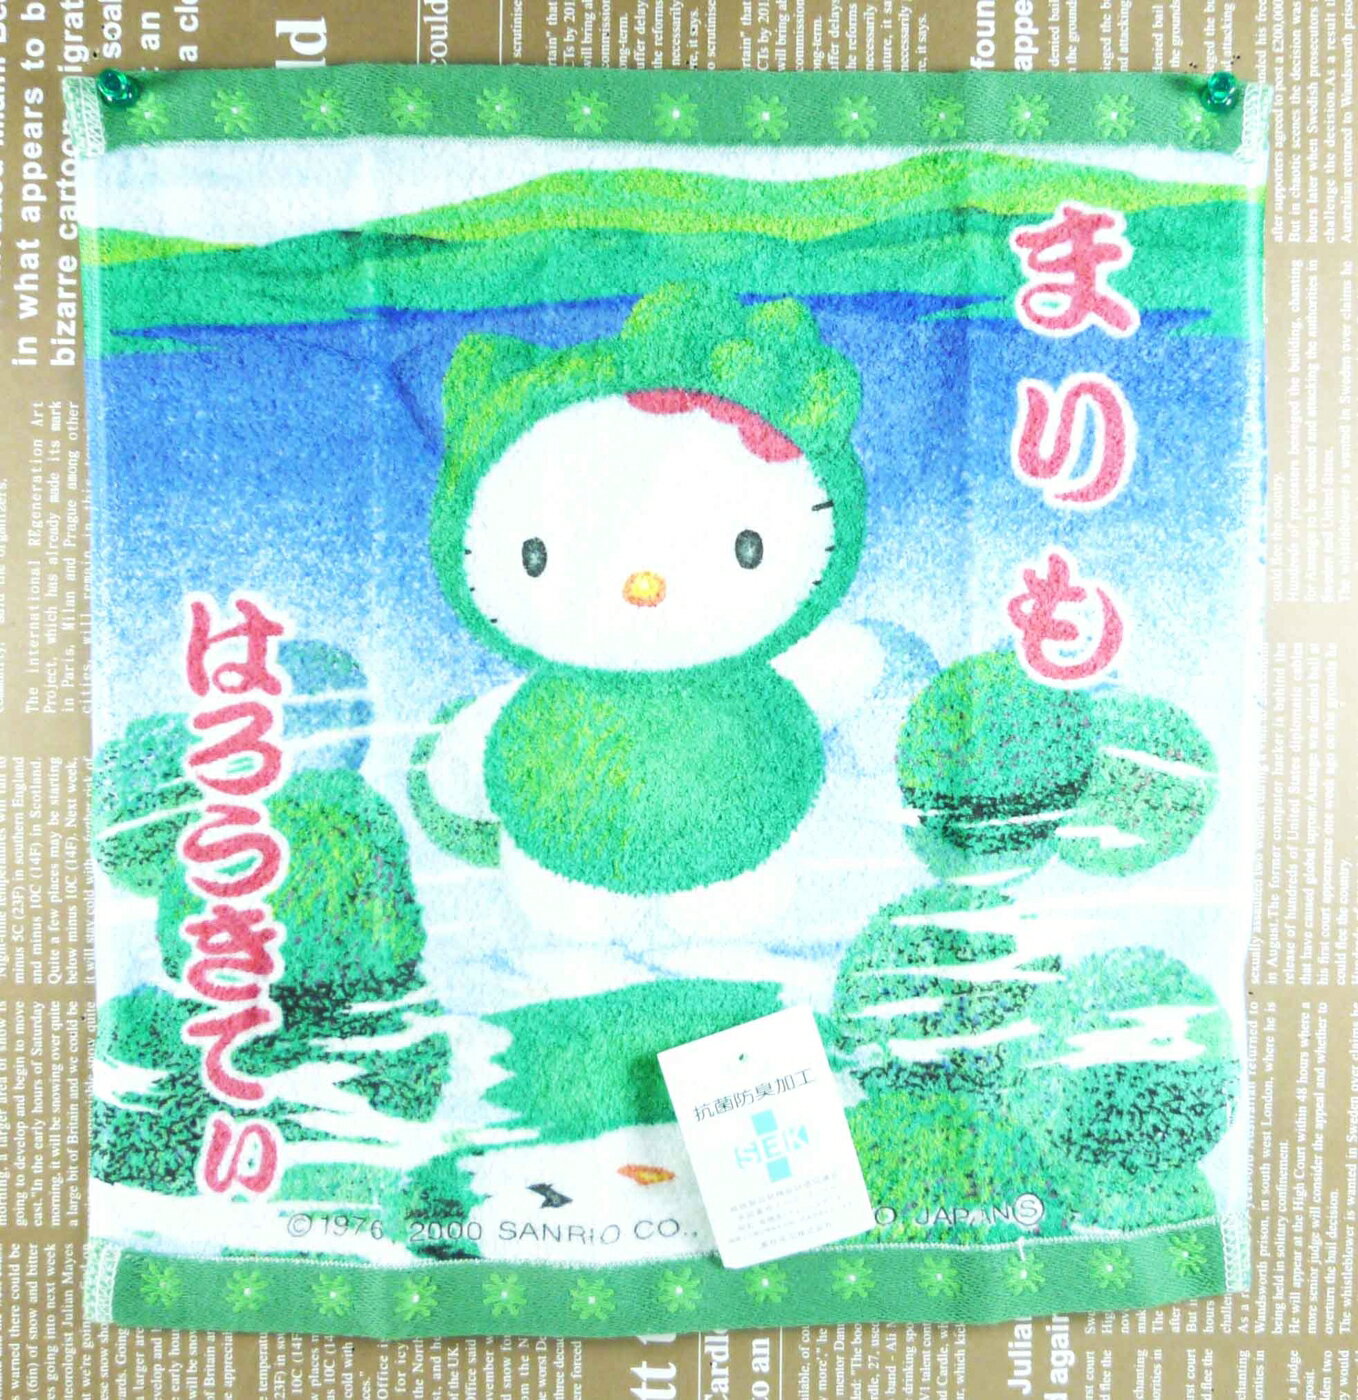 【震撼精品百貨】Hello Kitty 凱蒂貓 中方巾 綠藻 震撼日式精品百貨